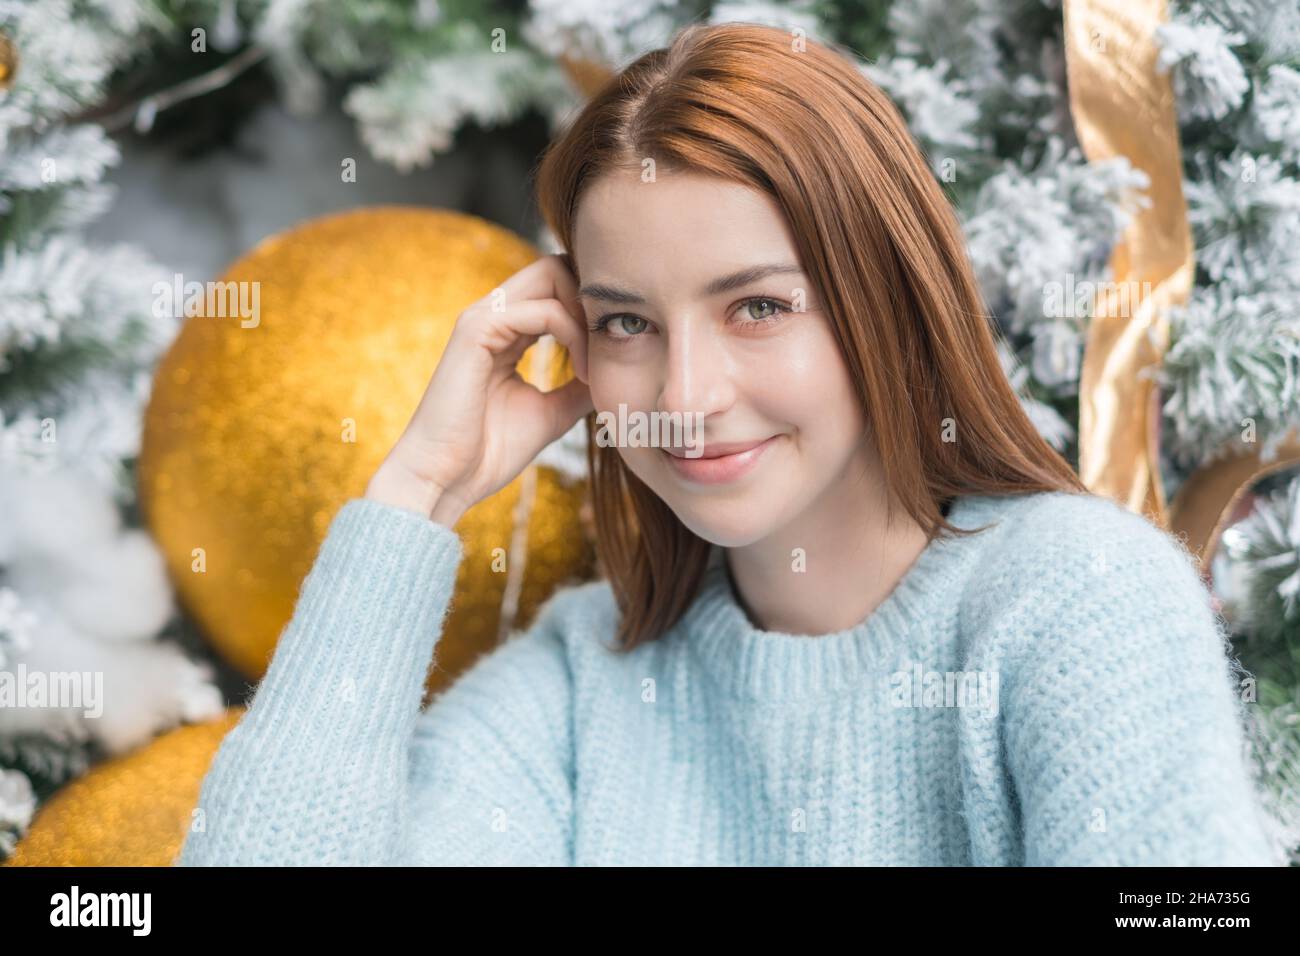 Neujahr Nahaufnahme Porträt von schönen lächelnden kaukasischen junge Frau in gemütlichen Wolle warm hellblau Pullover. Weihnachtsbaum im Hintergrund. Stockfoto